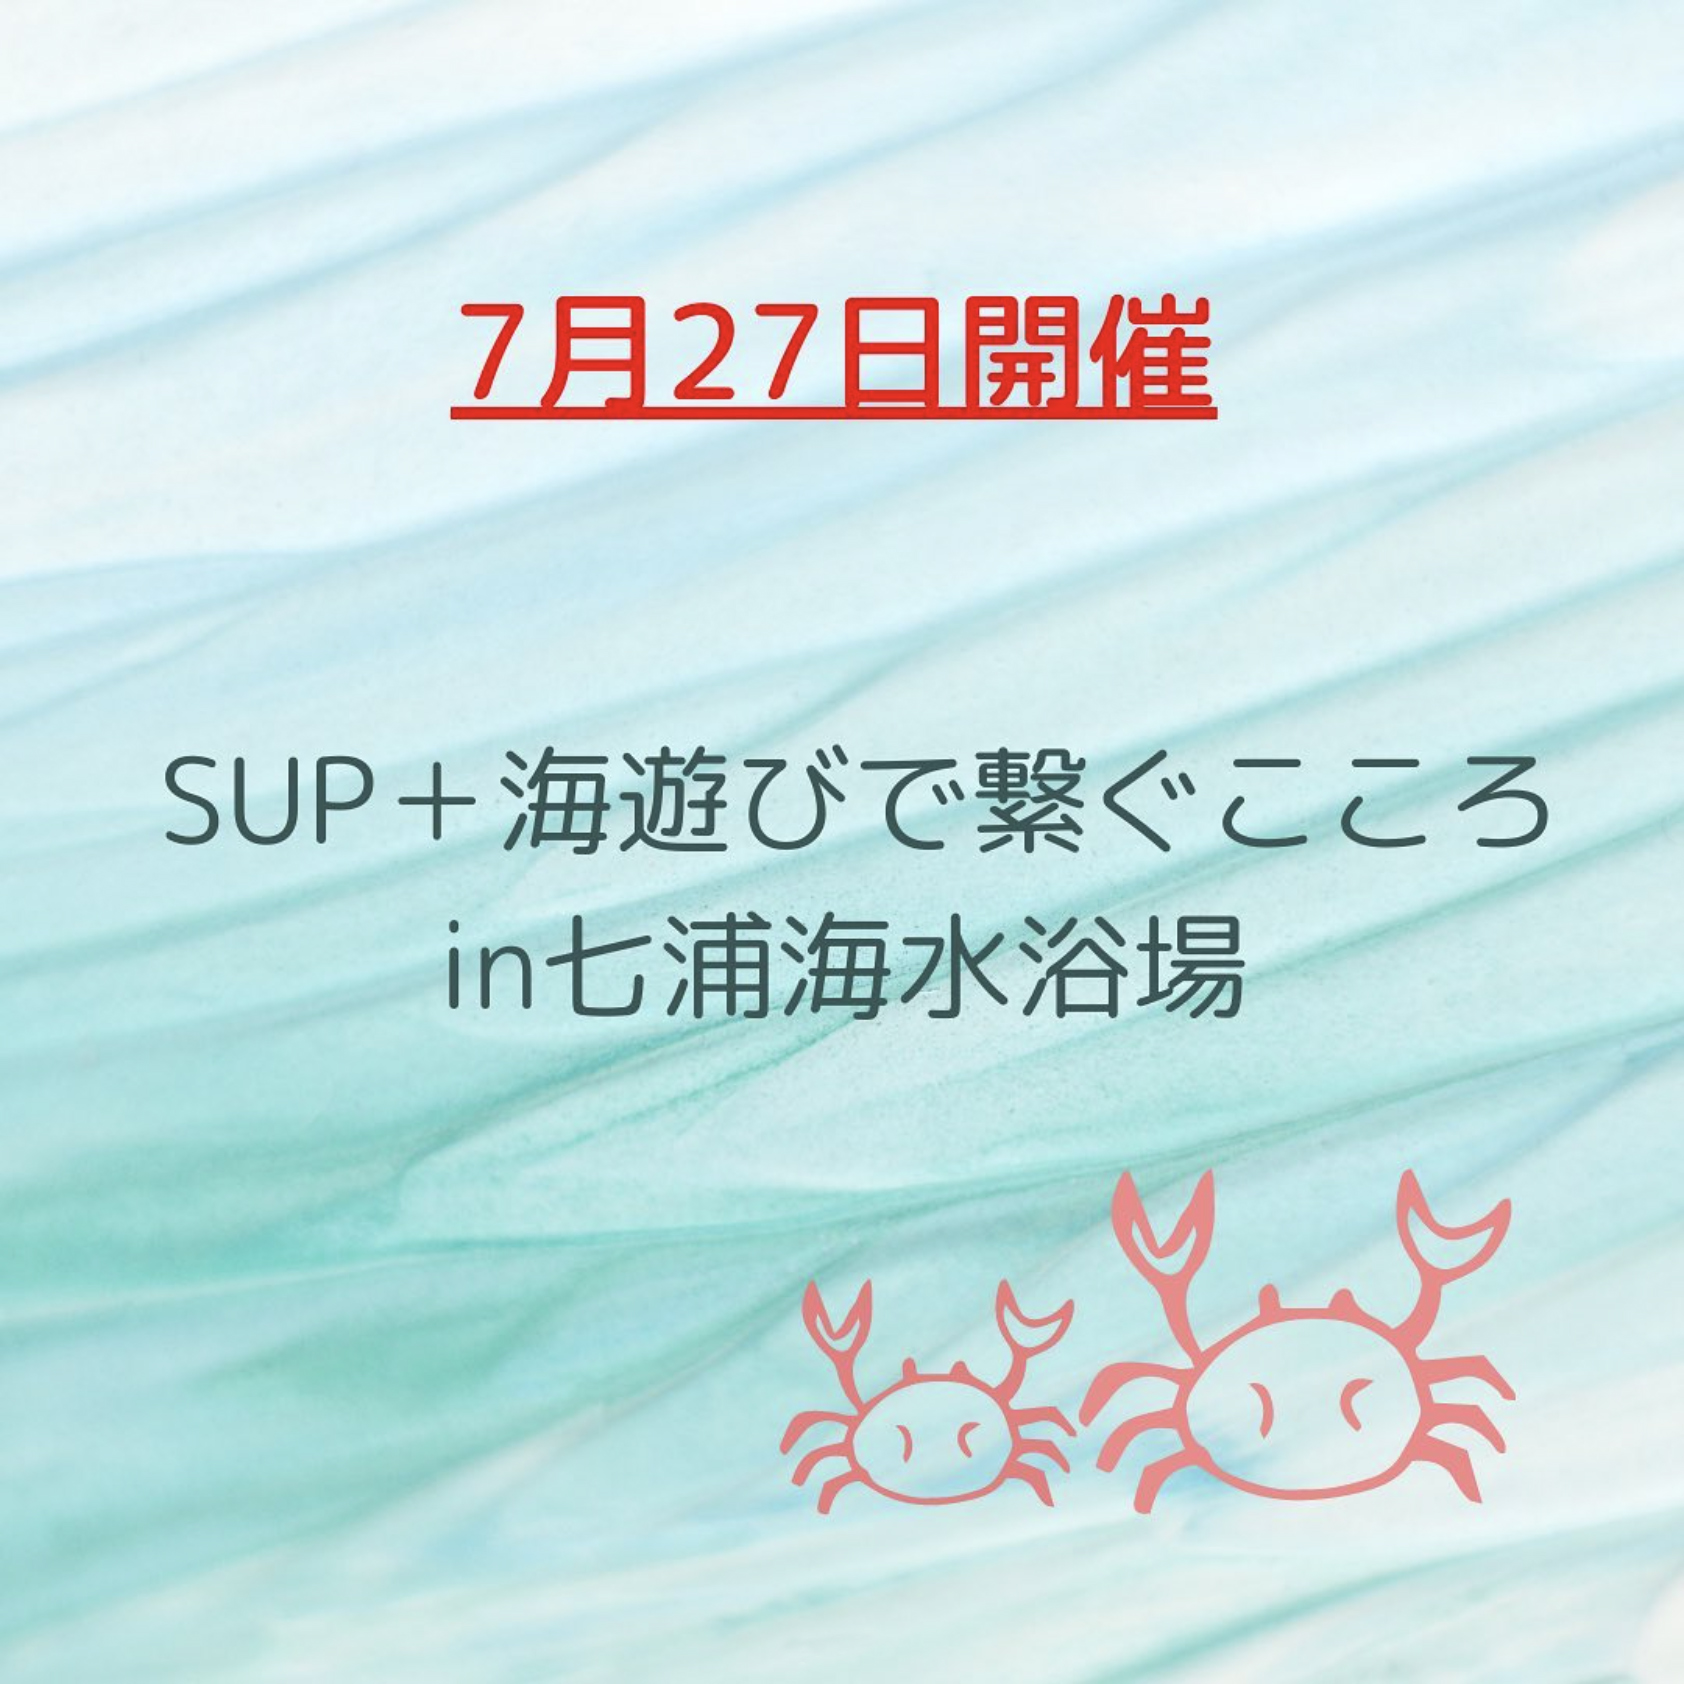 7月27日 SUP+海遊びで繋ぐこころin七浦海水浴場 | くれえばんマム☆呉